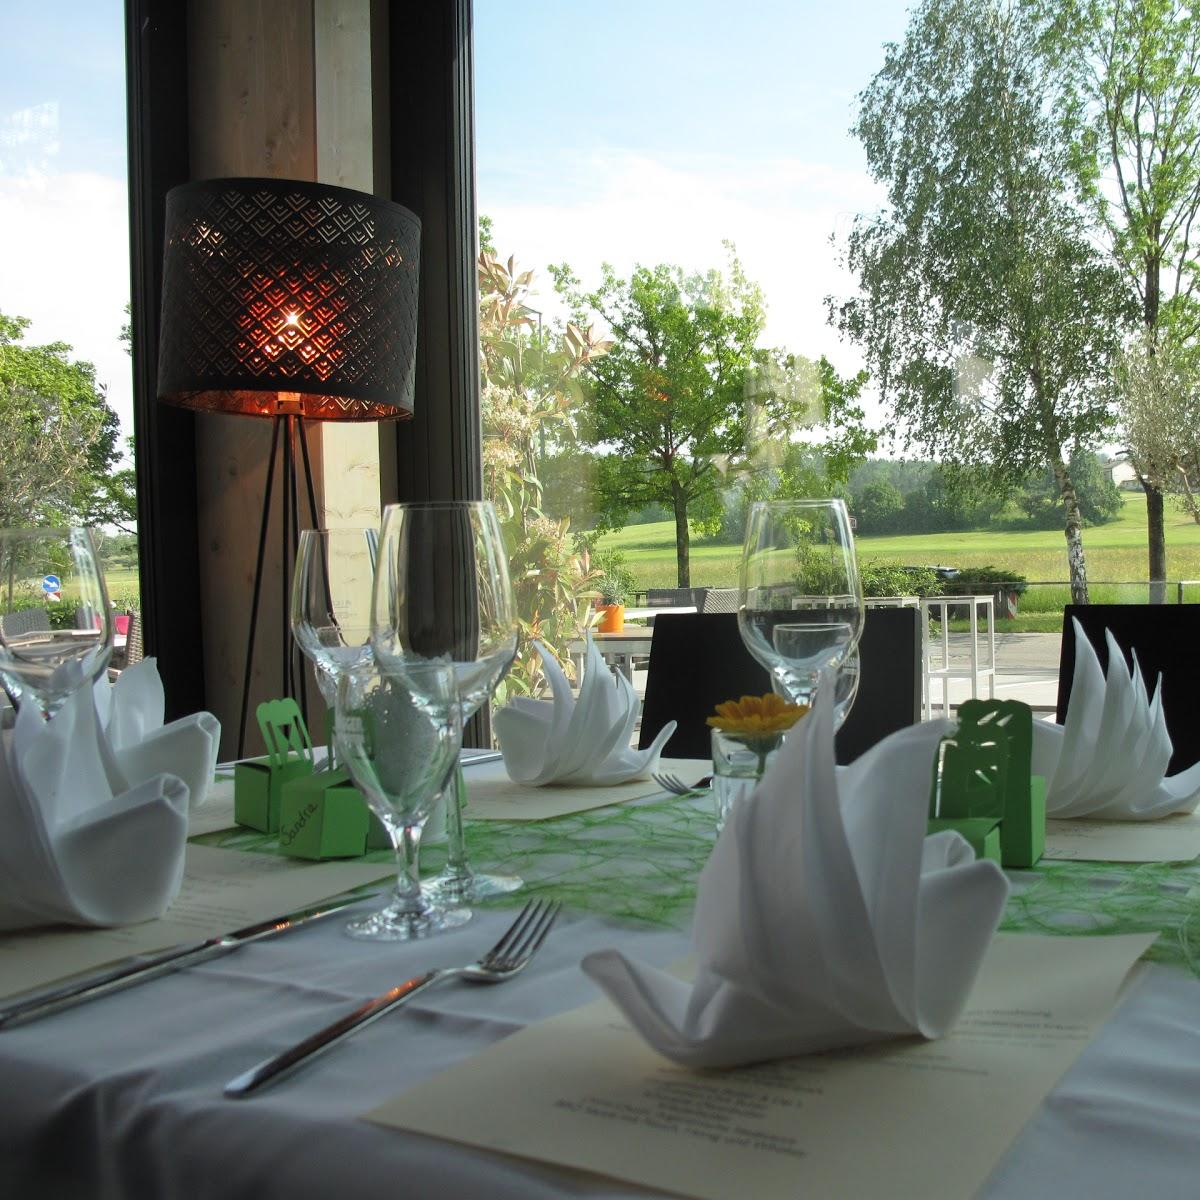 Restaurant "Ufer39" in  Konstanz